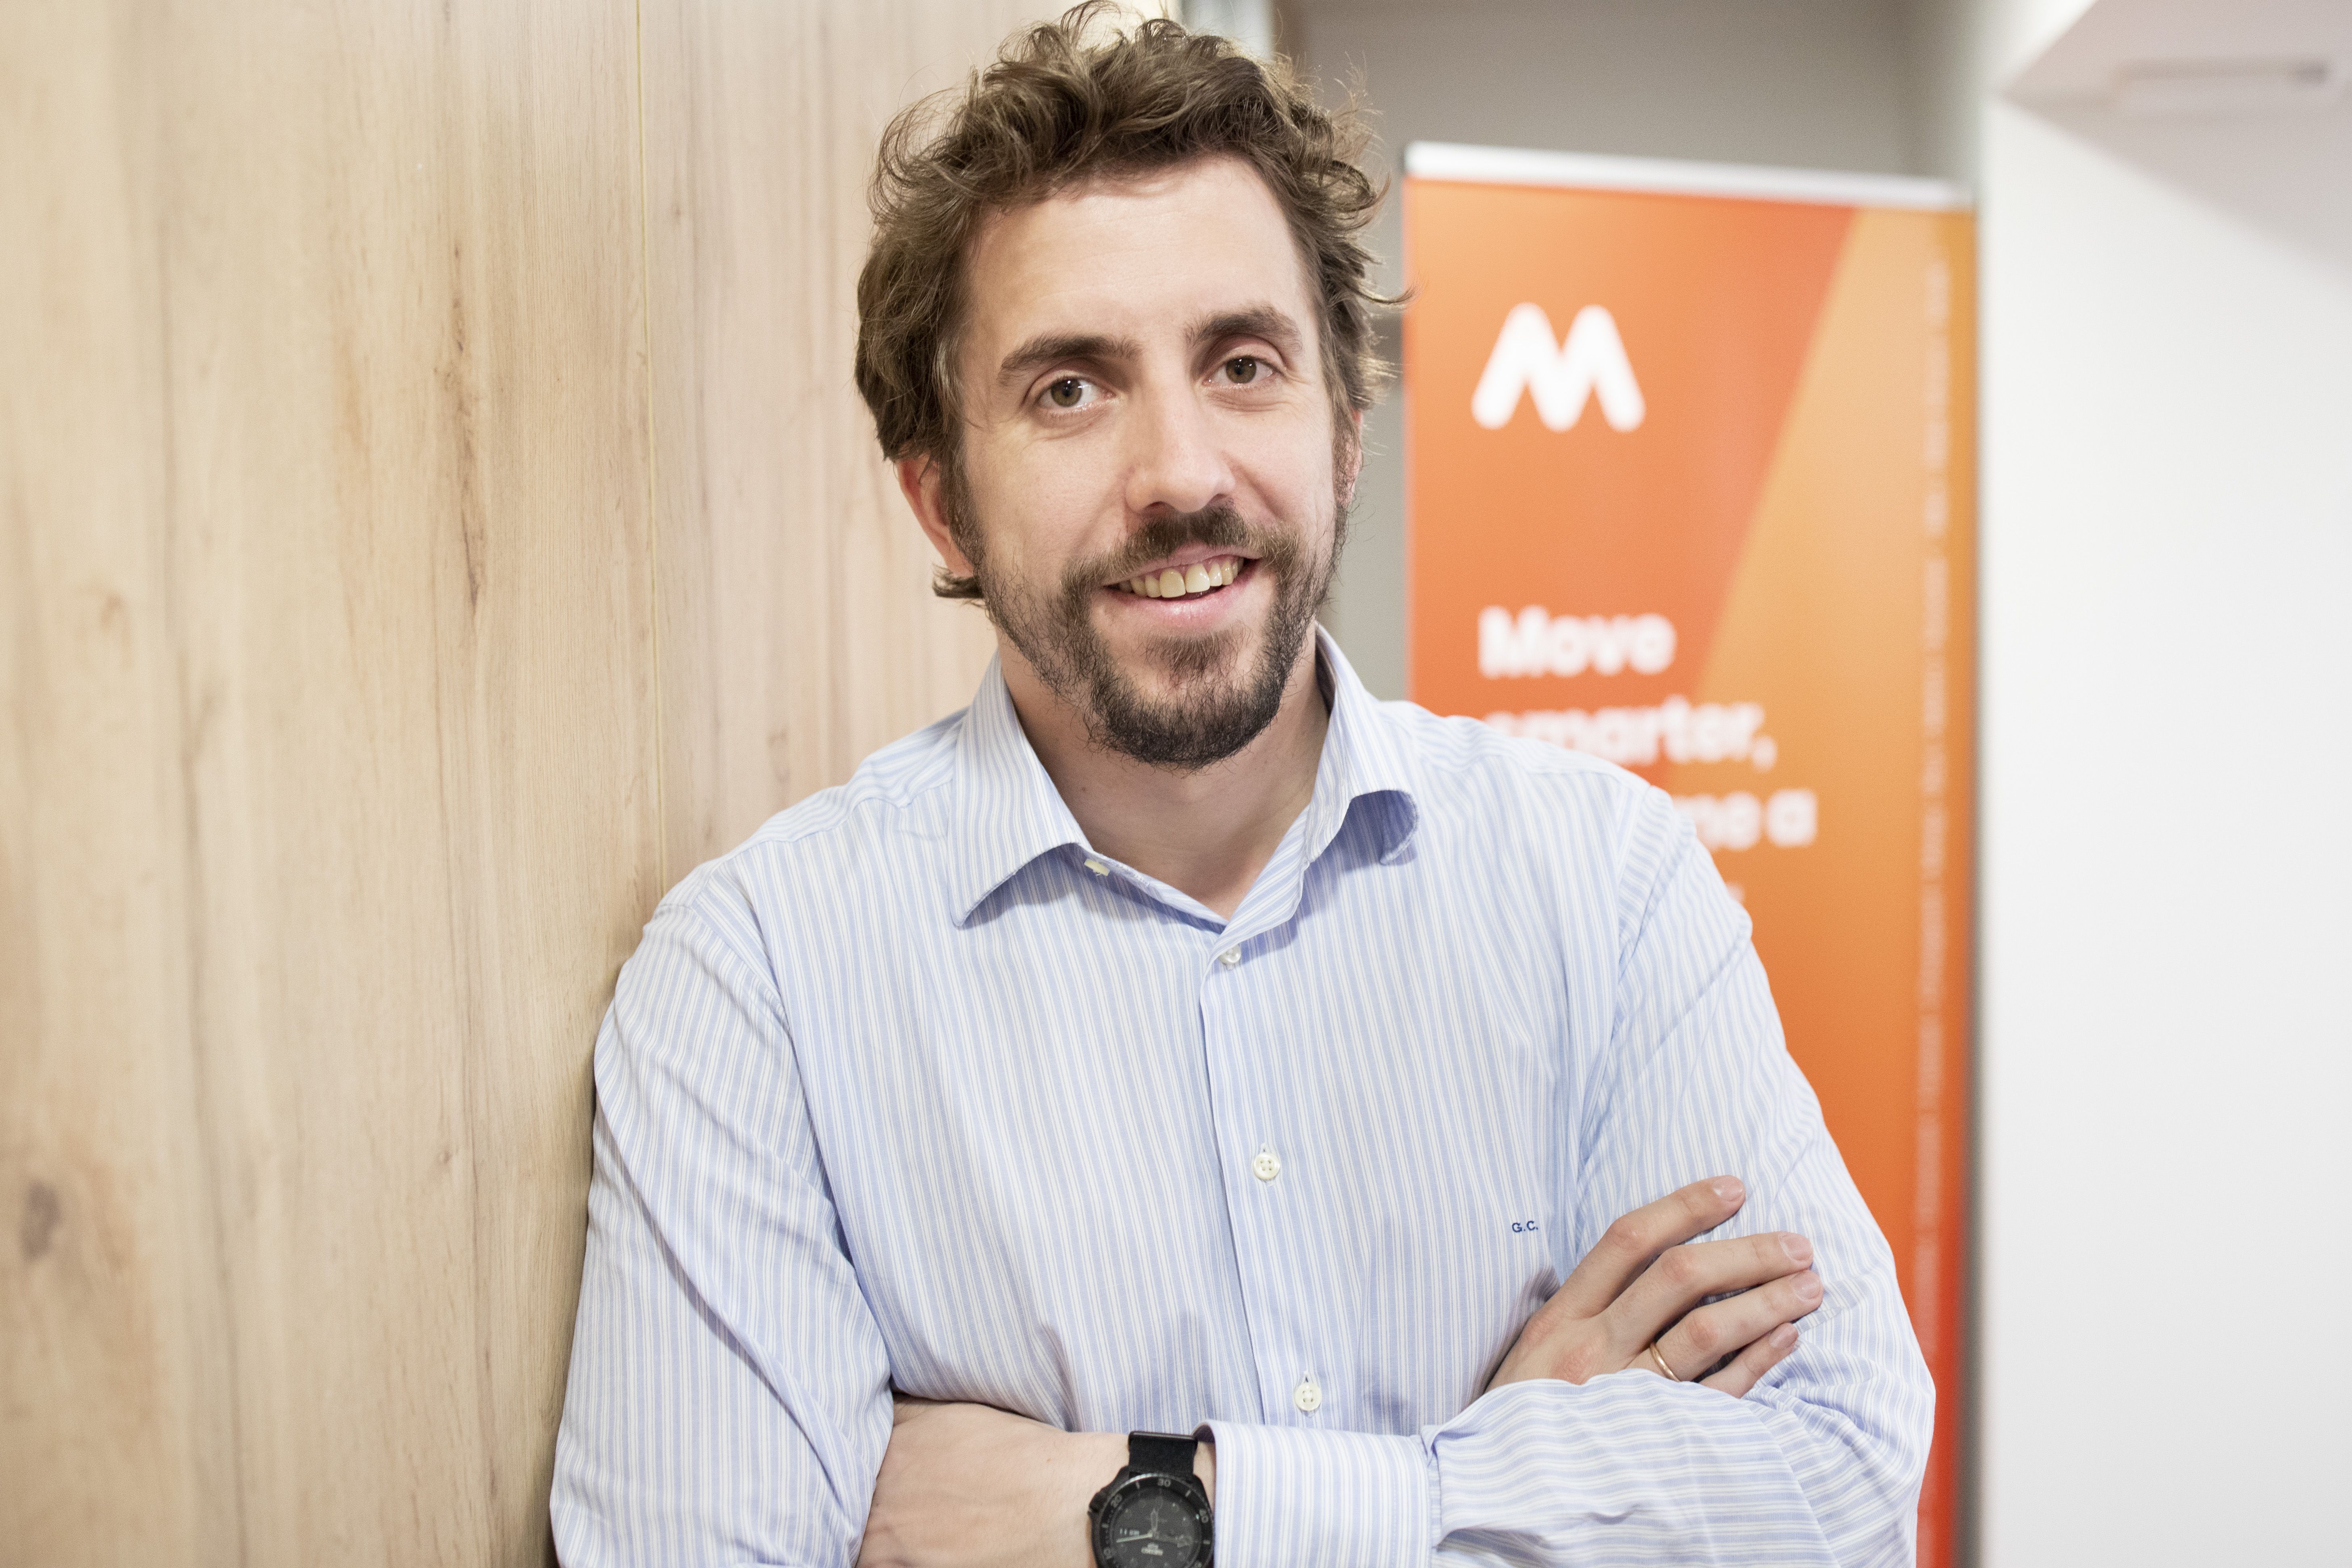 Hablamos con Guillermo Campoamor, CEO y fundador de Meep.